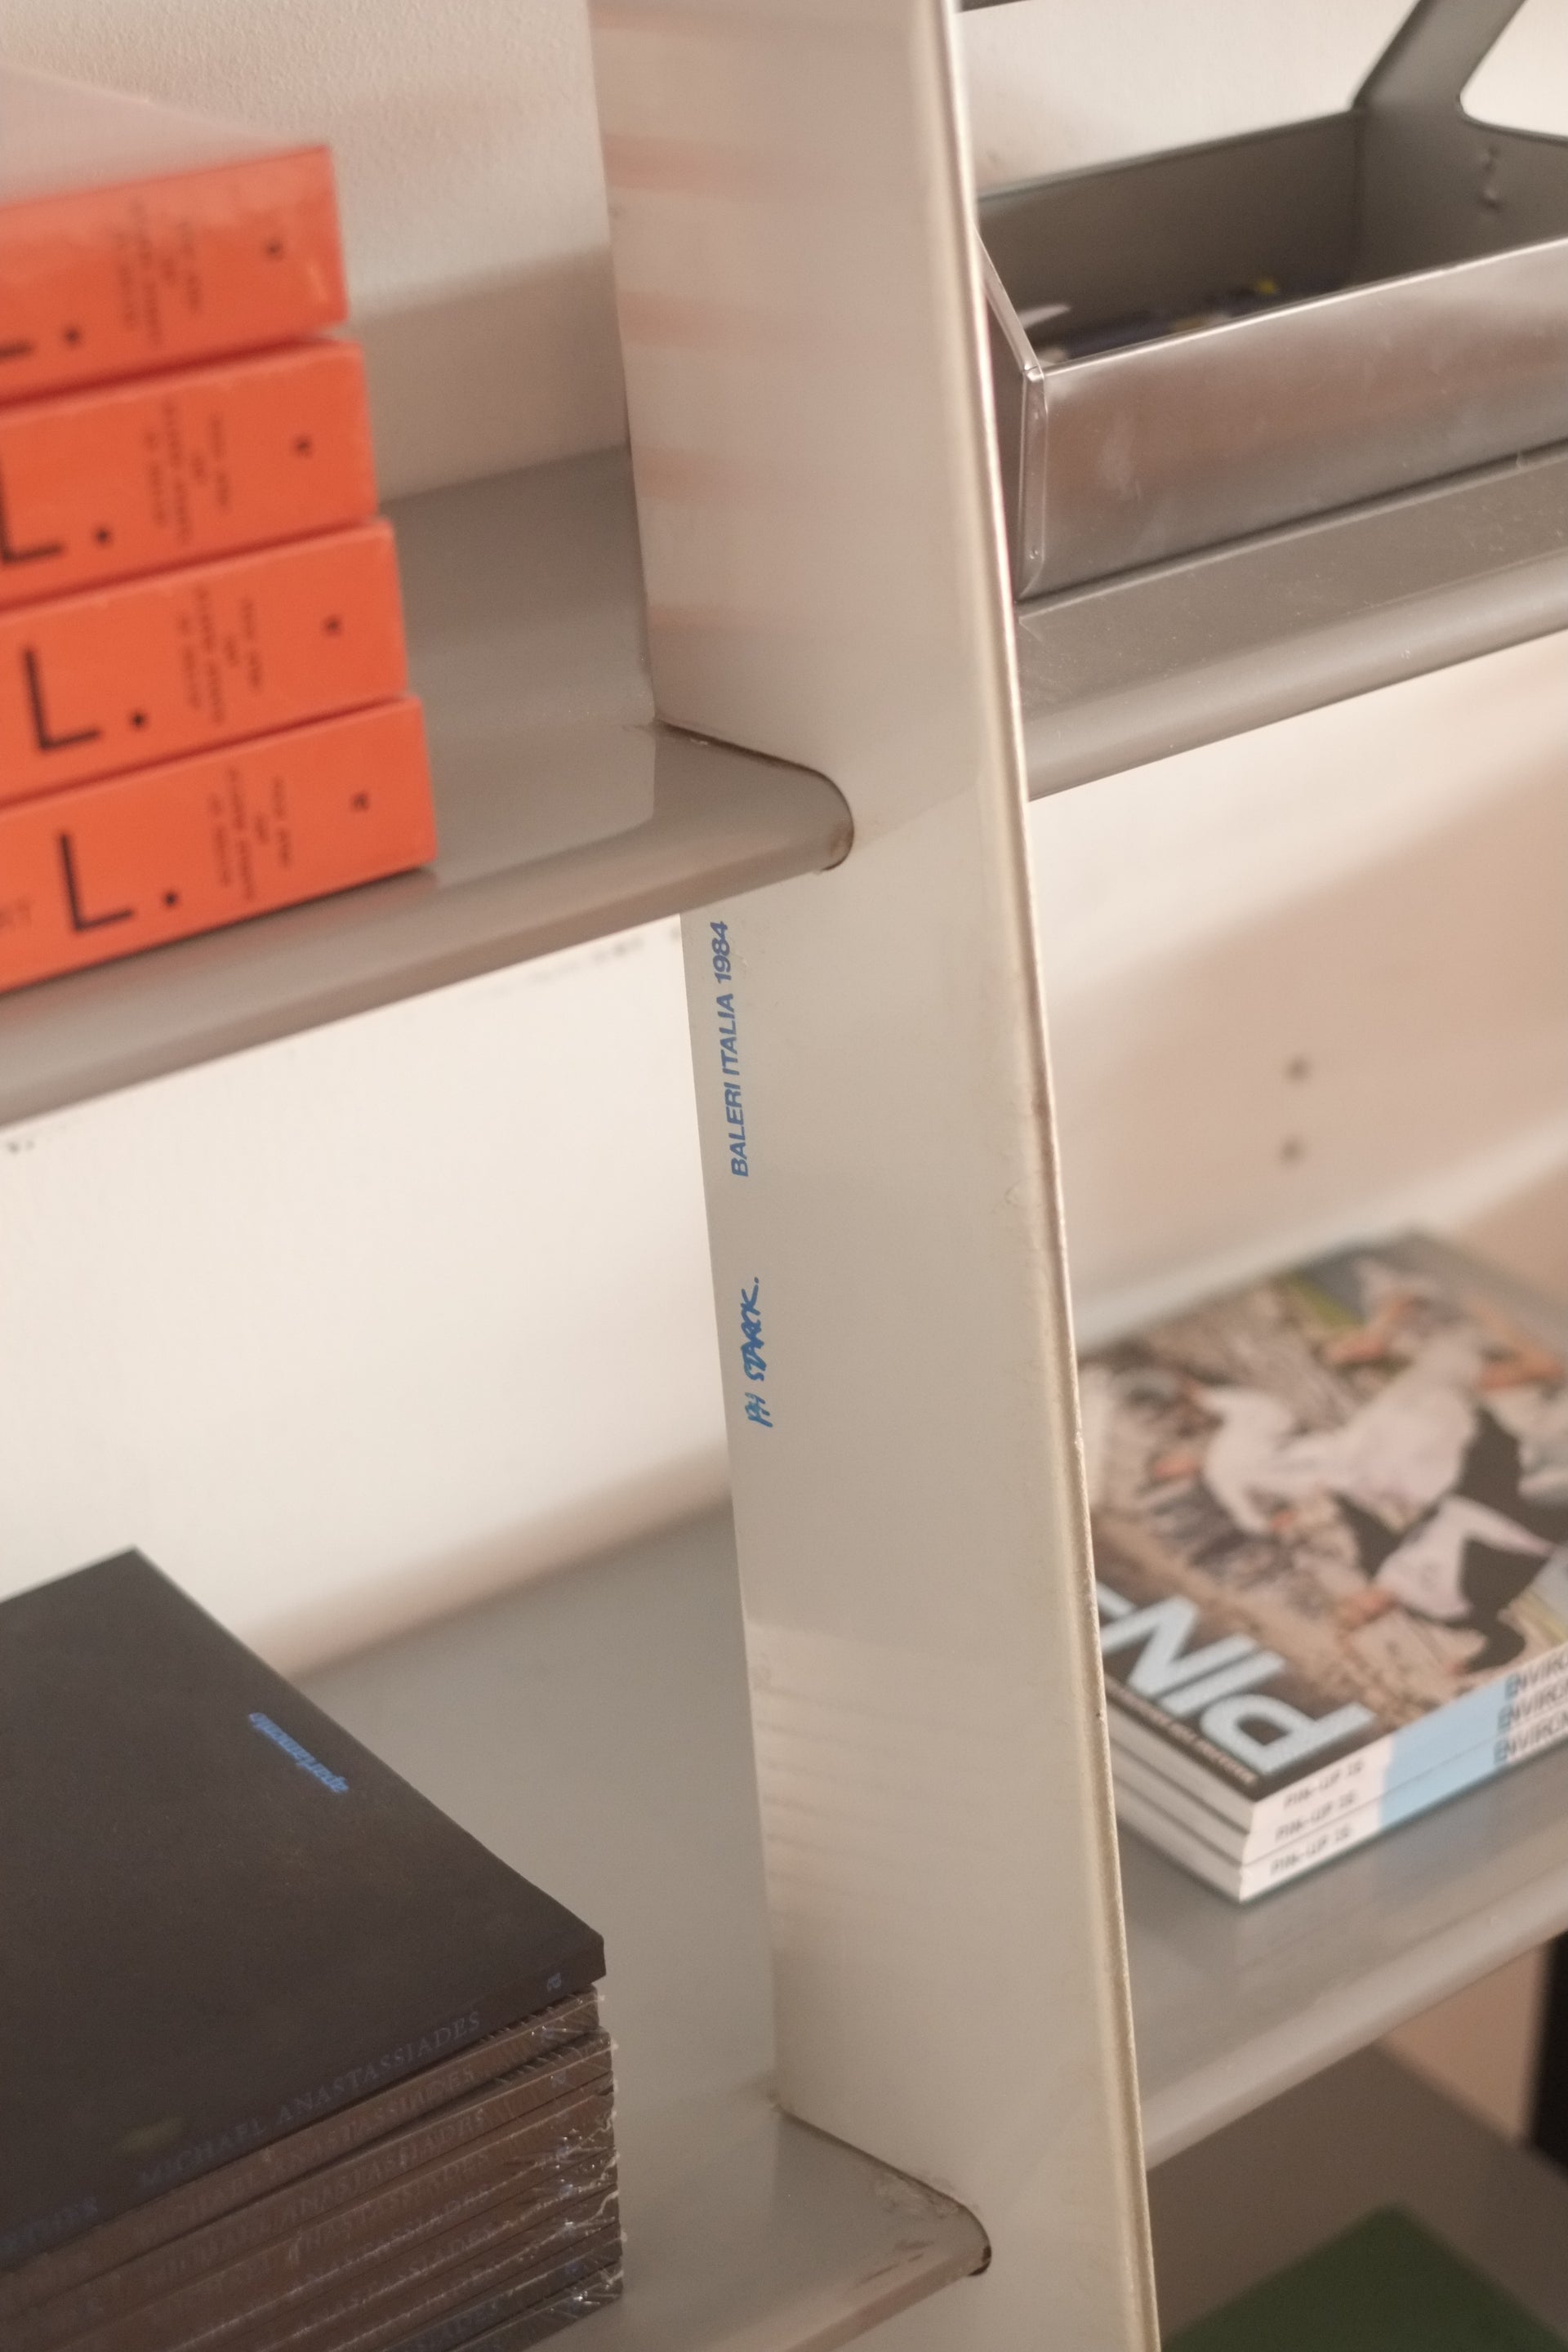 Mac Gee Bookshelf by Philippe Starck for Baleri Italia